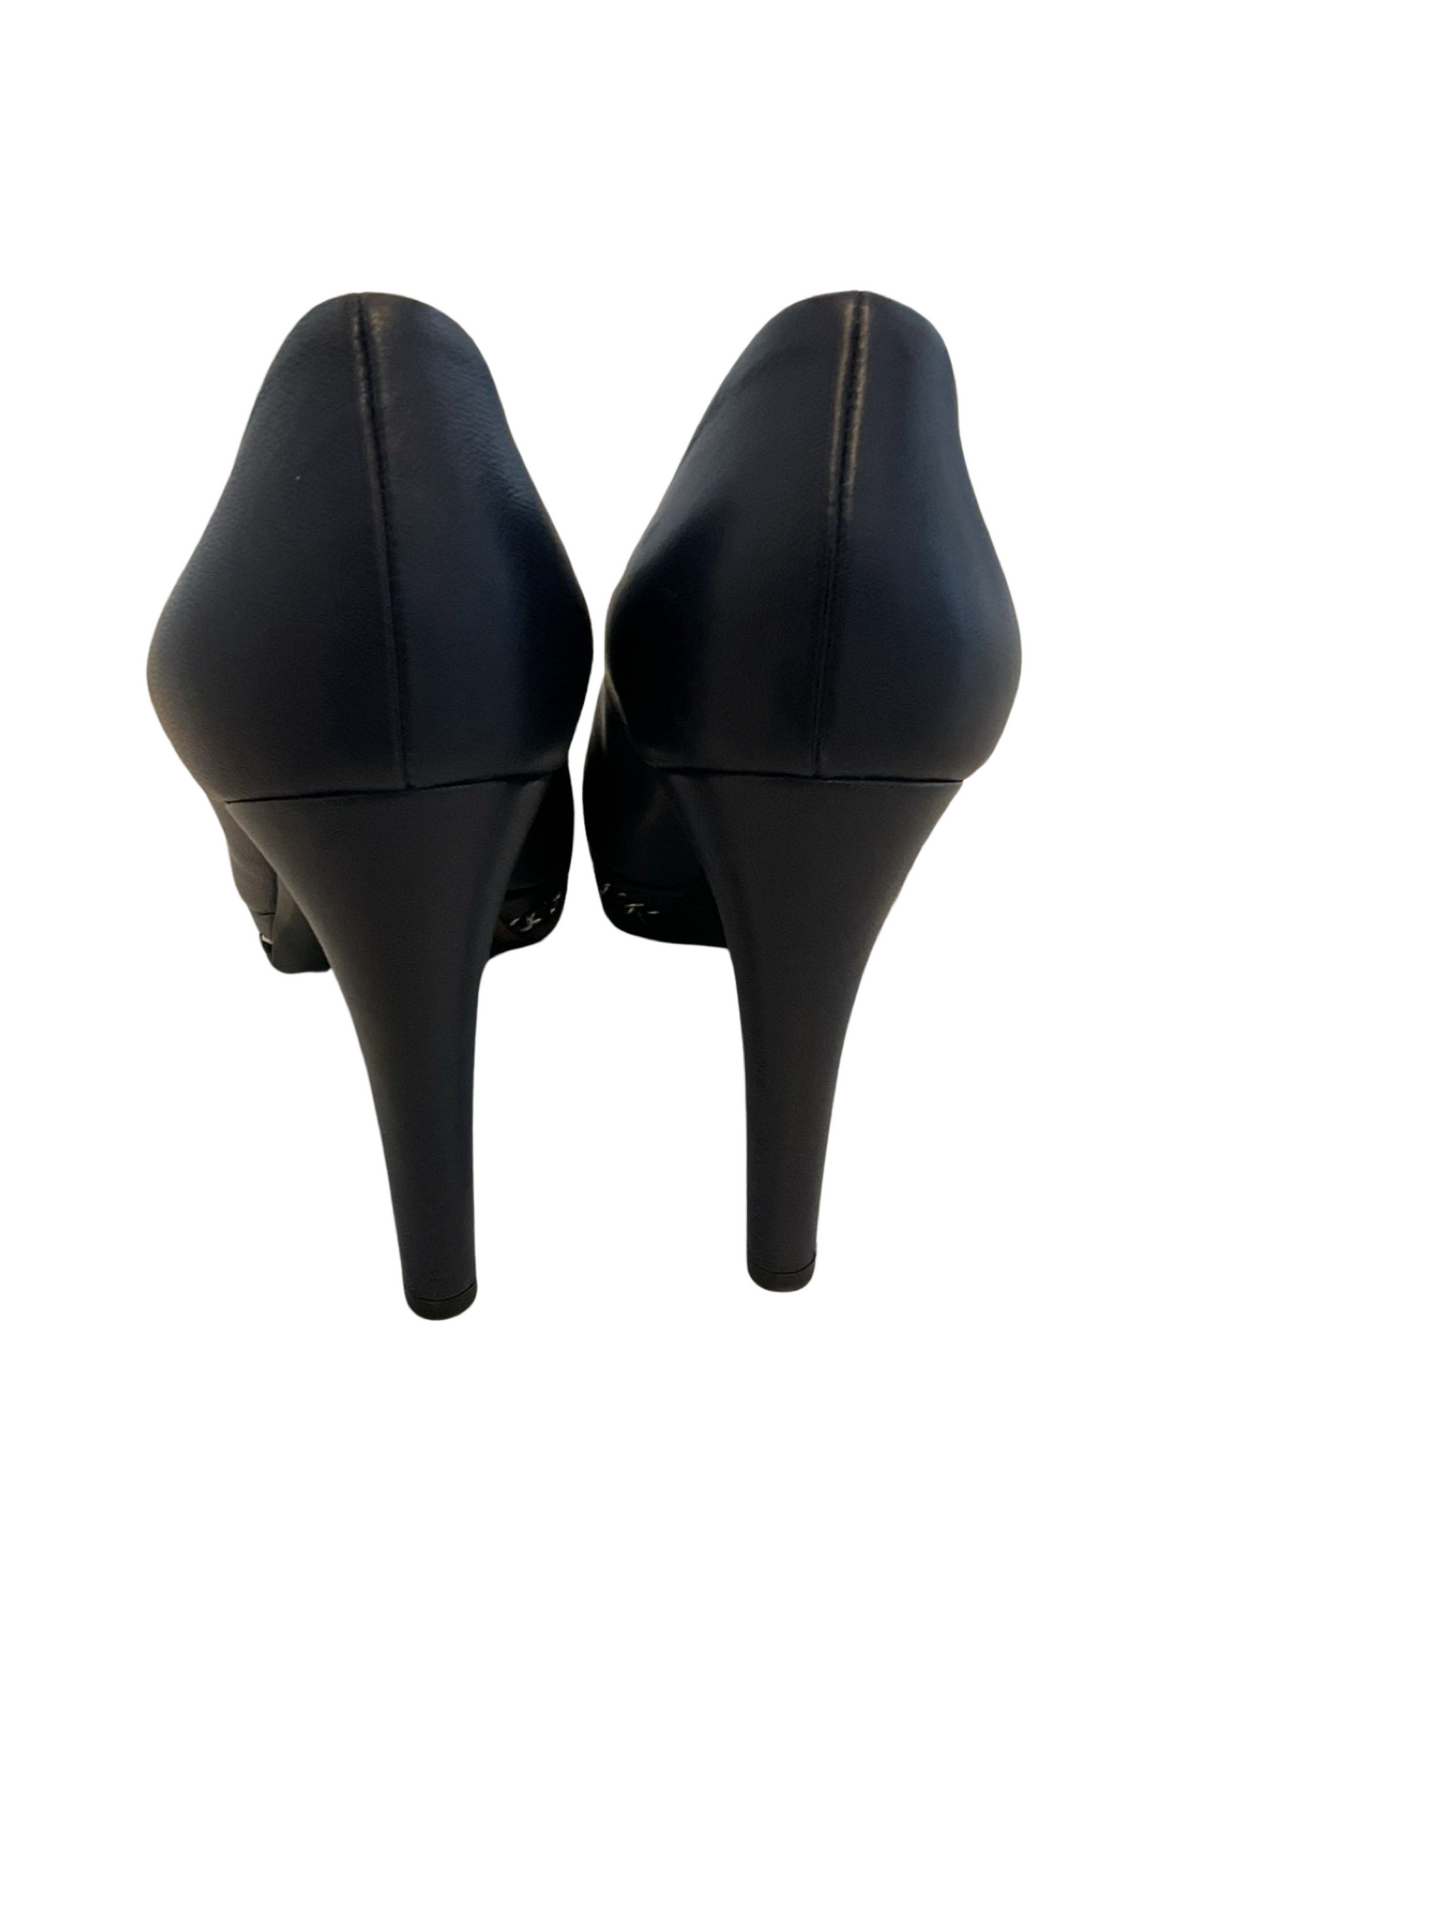 CHANEL navy/black heels